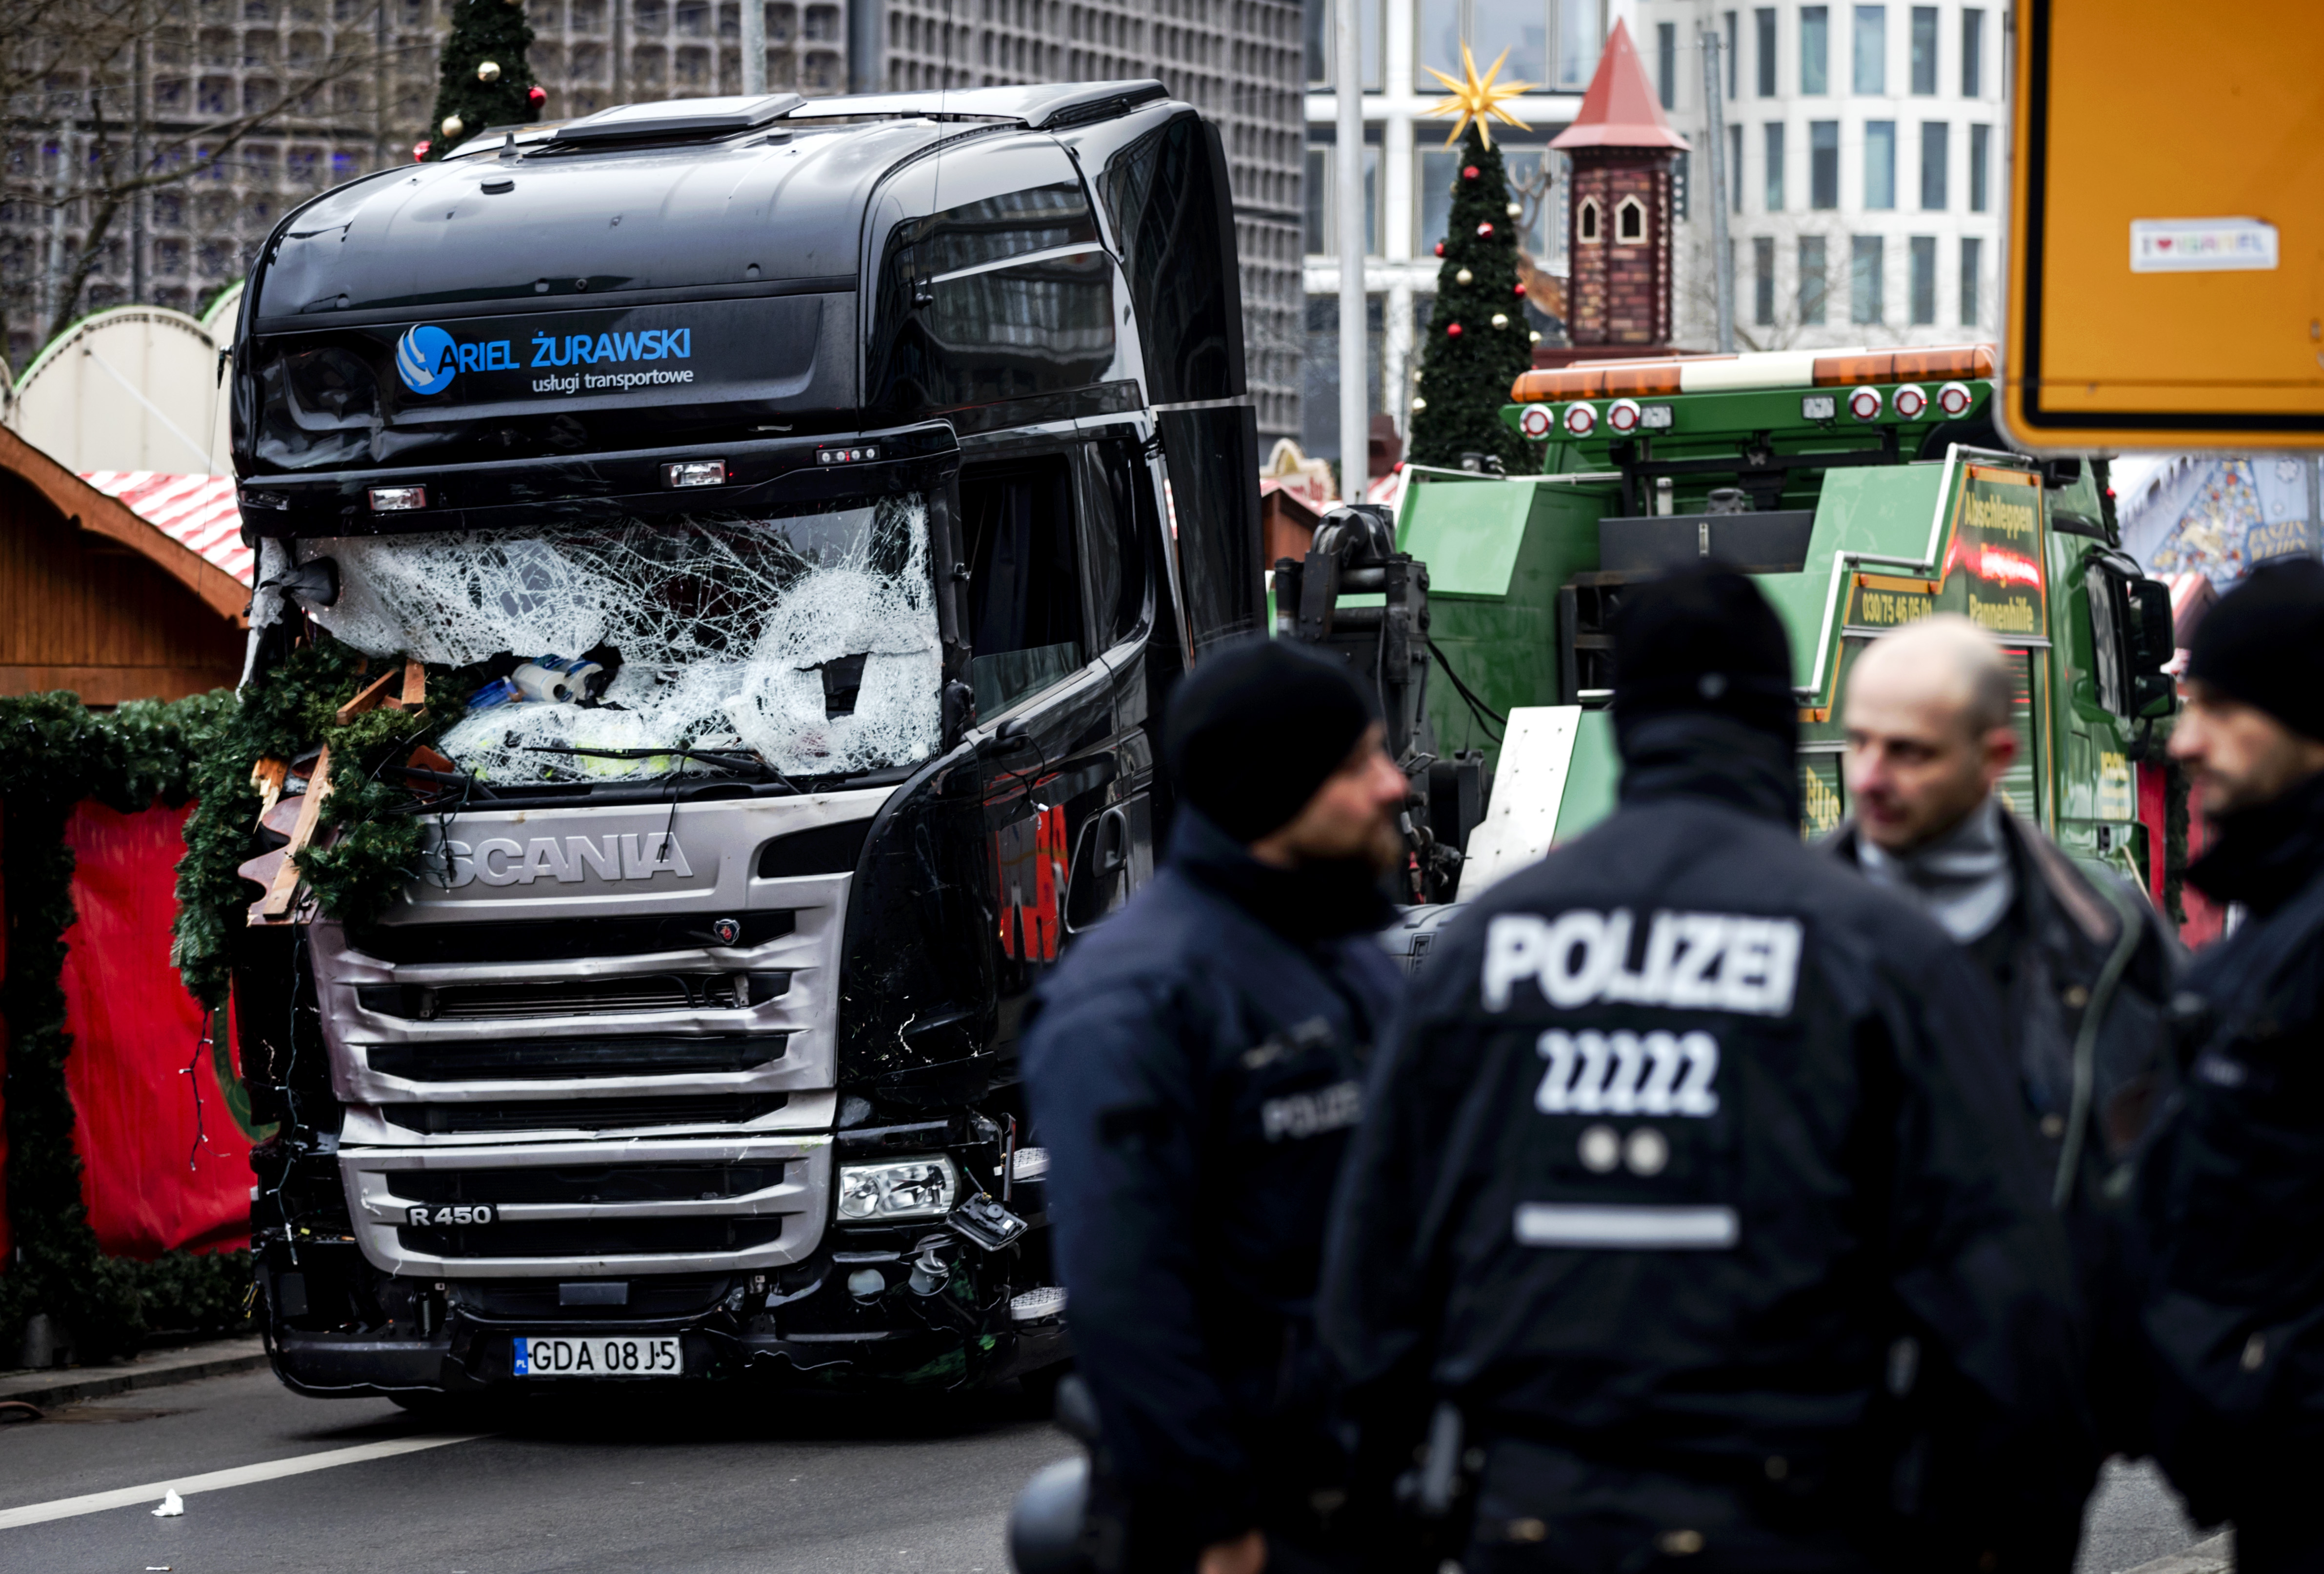 De dader van de aanslag in Berlijn loopt nog altijd vrij rond. De politie heeft een aantal sporen die worden gevolgd om hem toch snel te pakken.